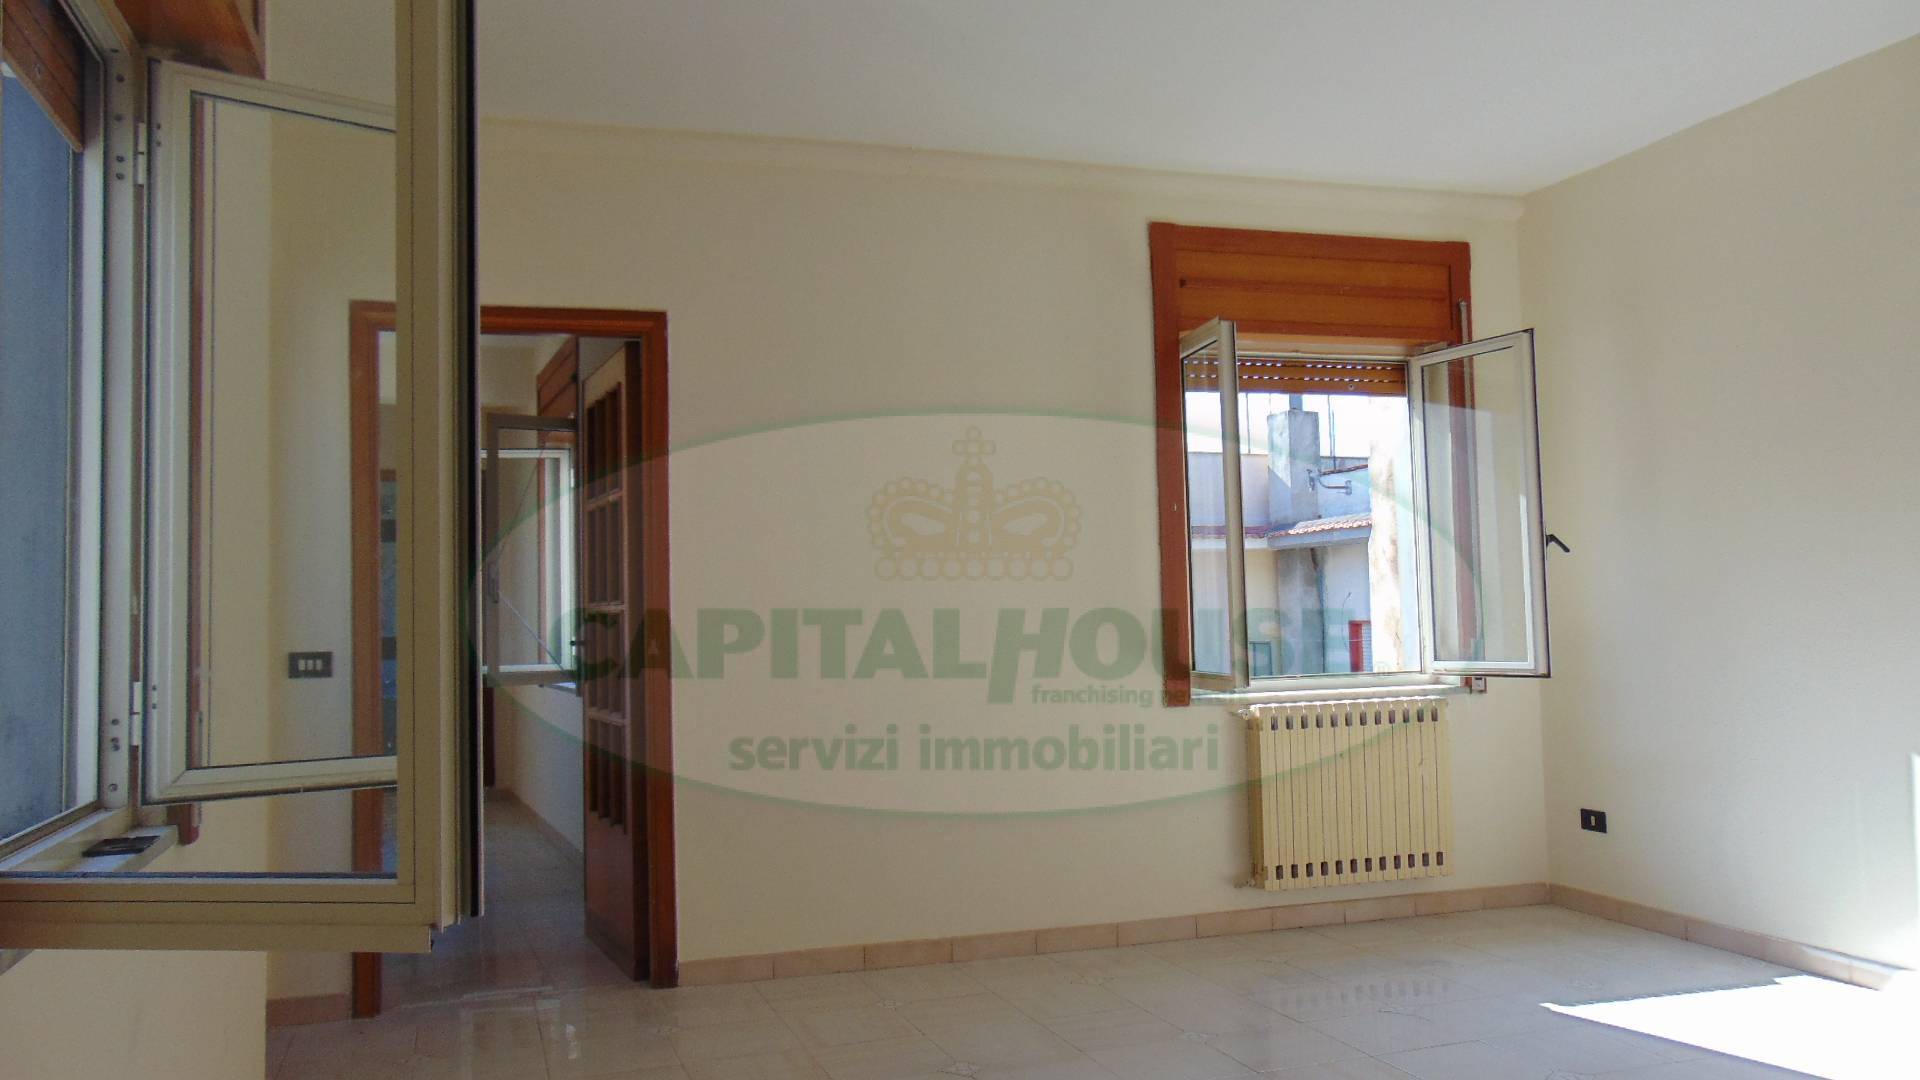 Appartamento in vendita a Sirignano, 3 locali, prezzo € 68.000 | CambioCasa.it